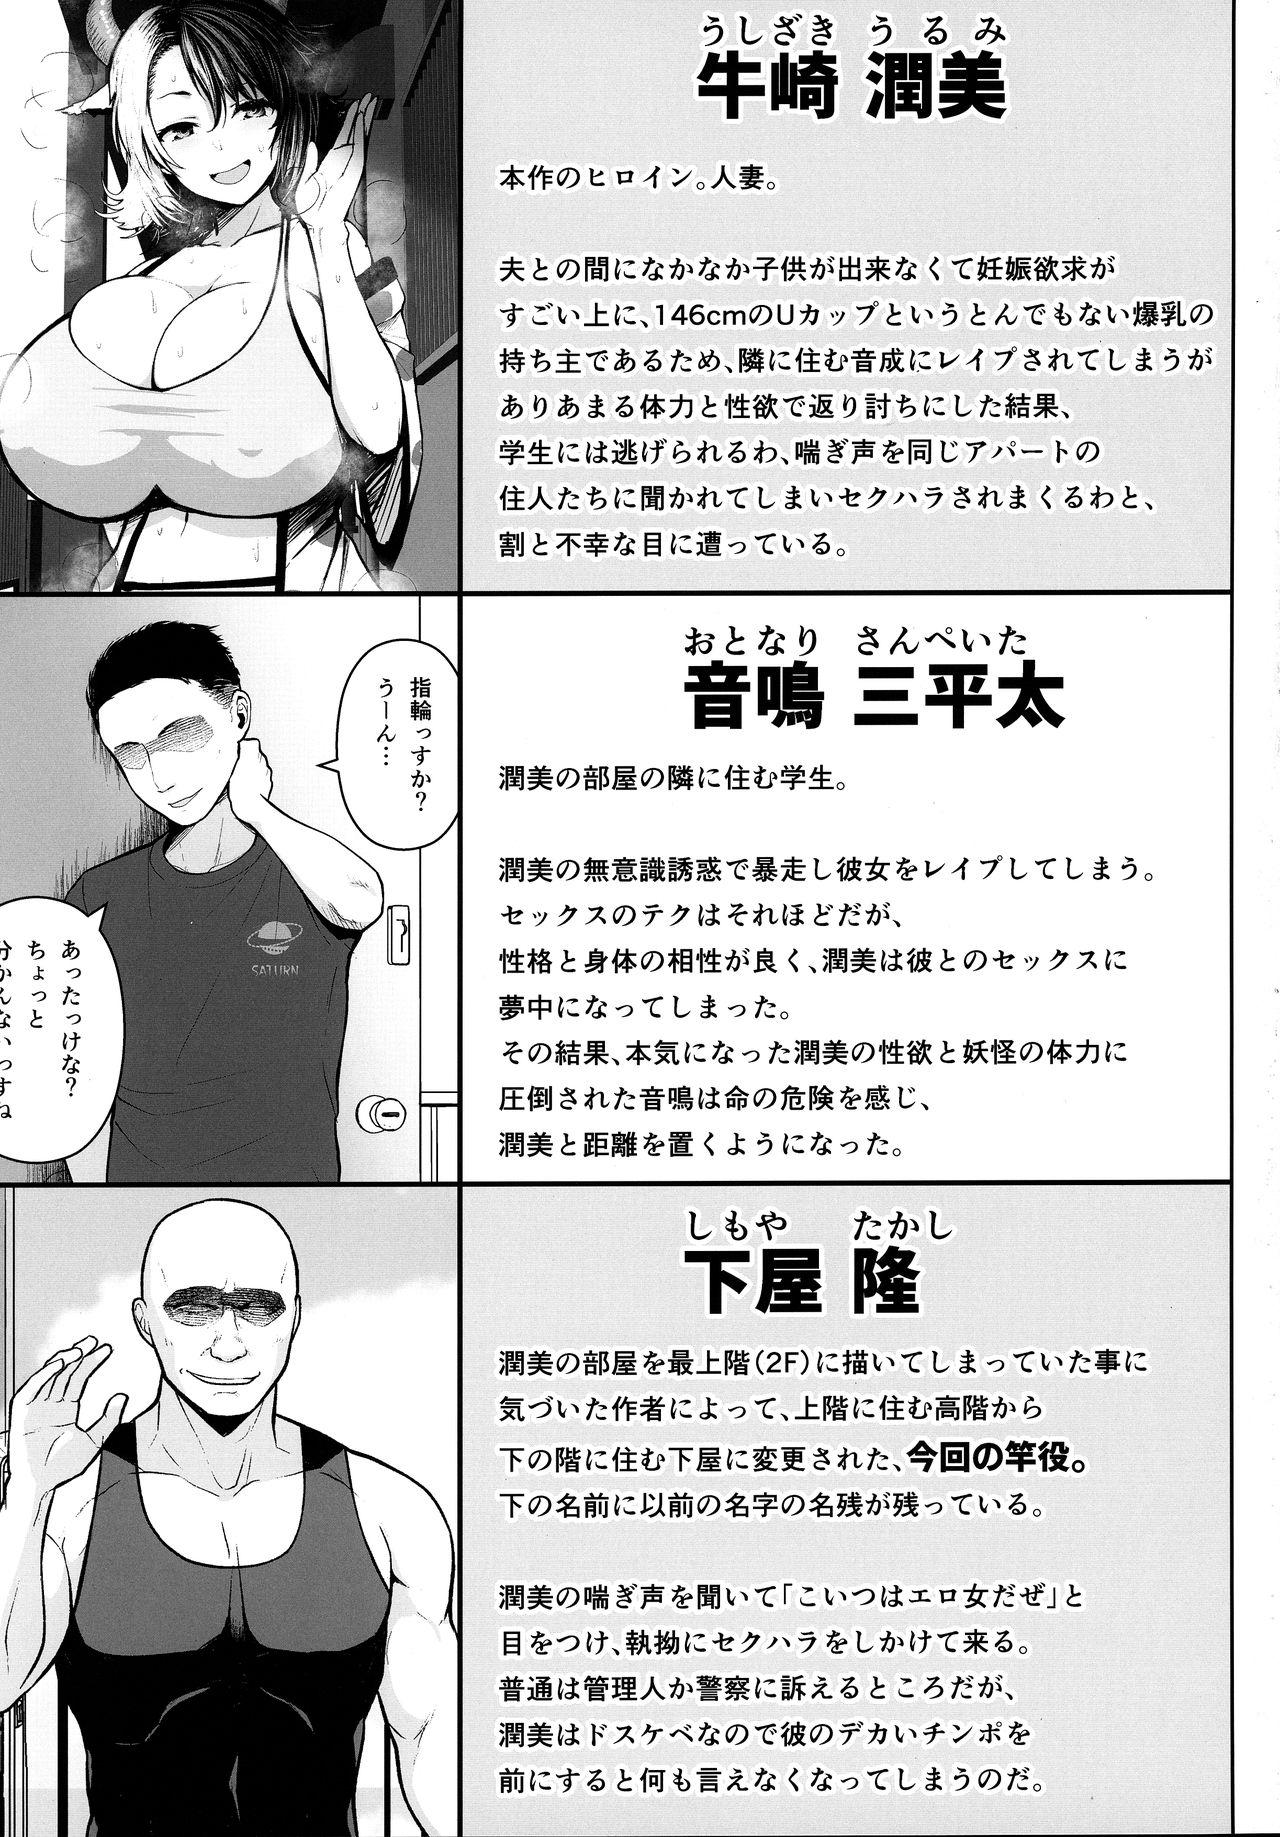 Classy Oku-san no Oppai ga Dekasugiru no ga Warui! 3 - Touhou project Bizarre - Page 2